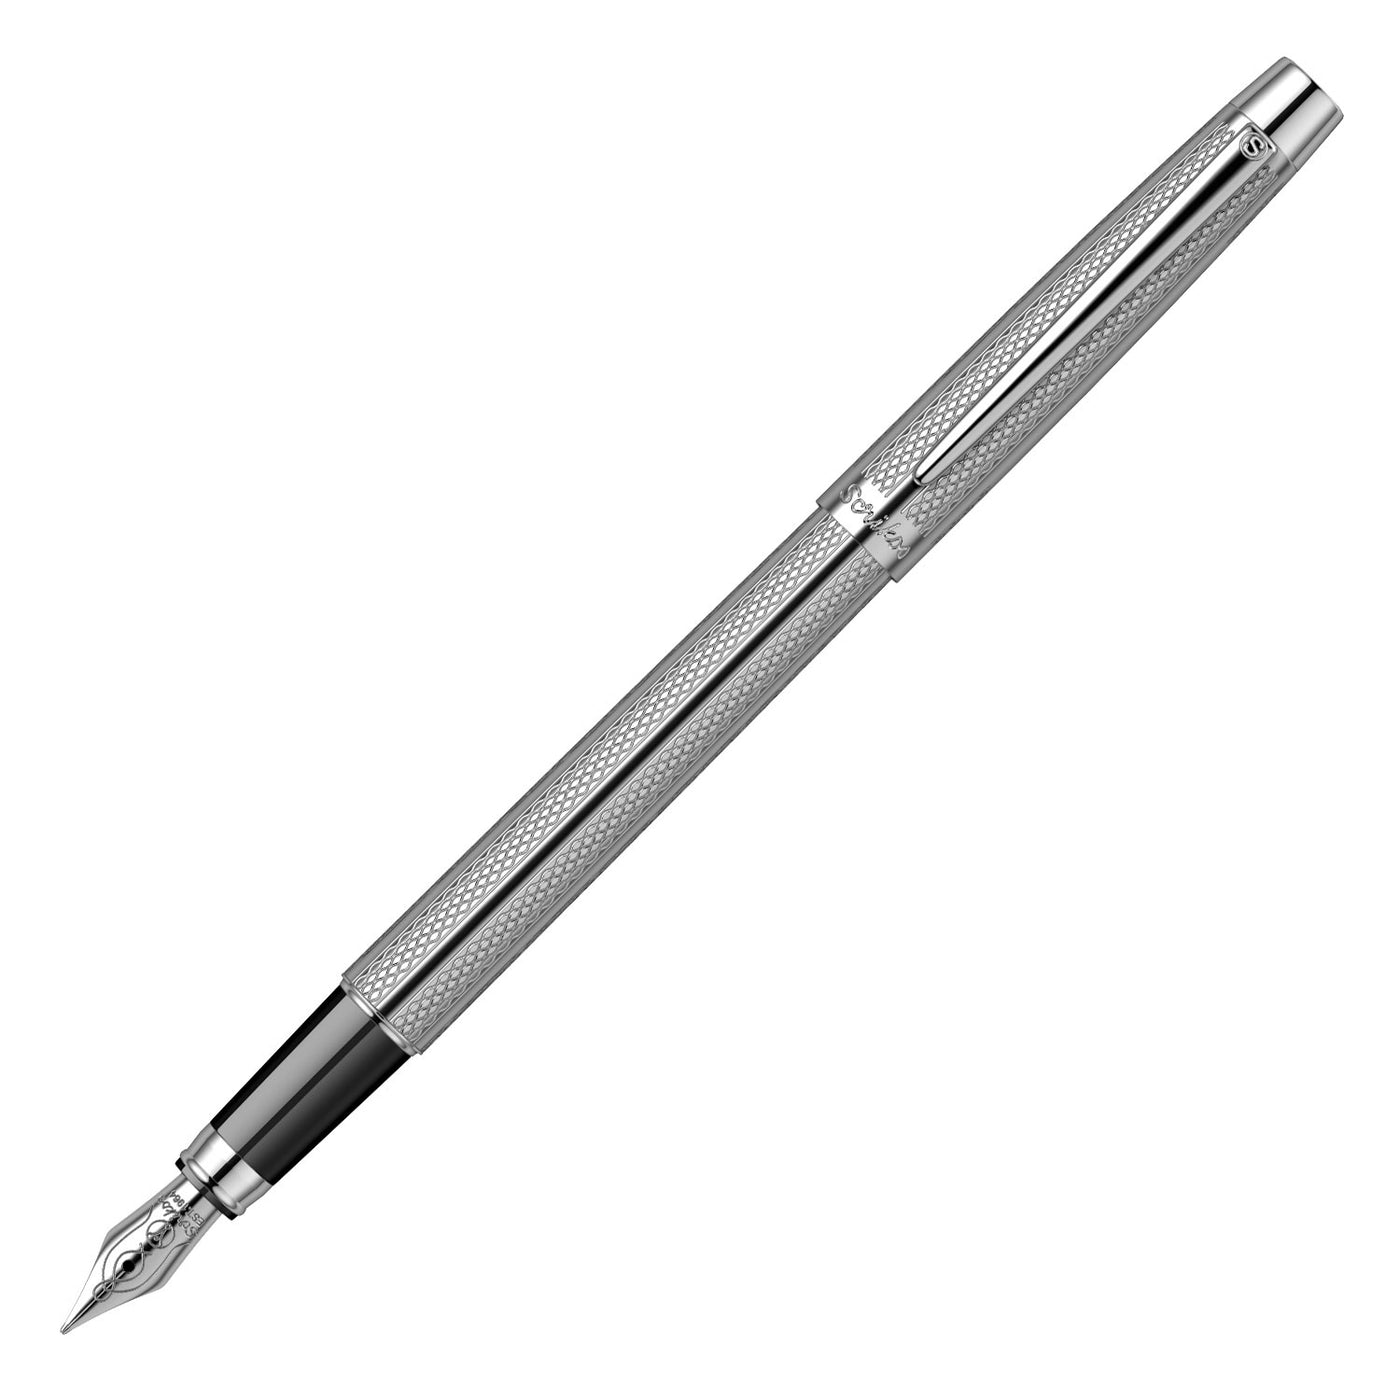 Scrikss Venus 722 Fountain Pen, Chrome / Chrome Trim - Steel Nib 1